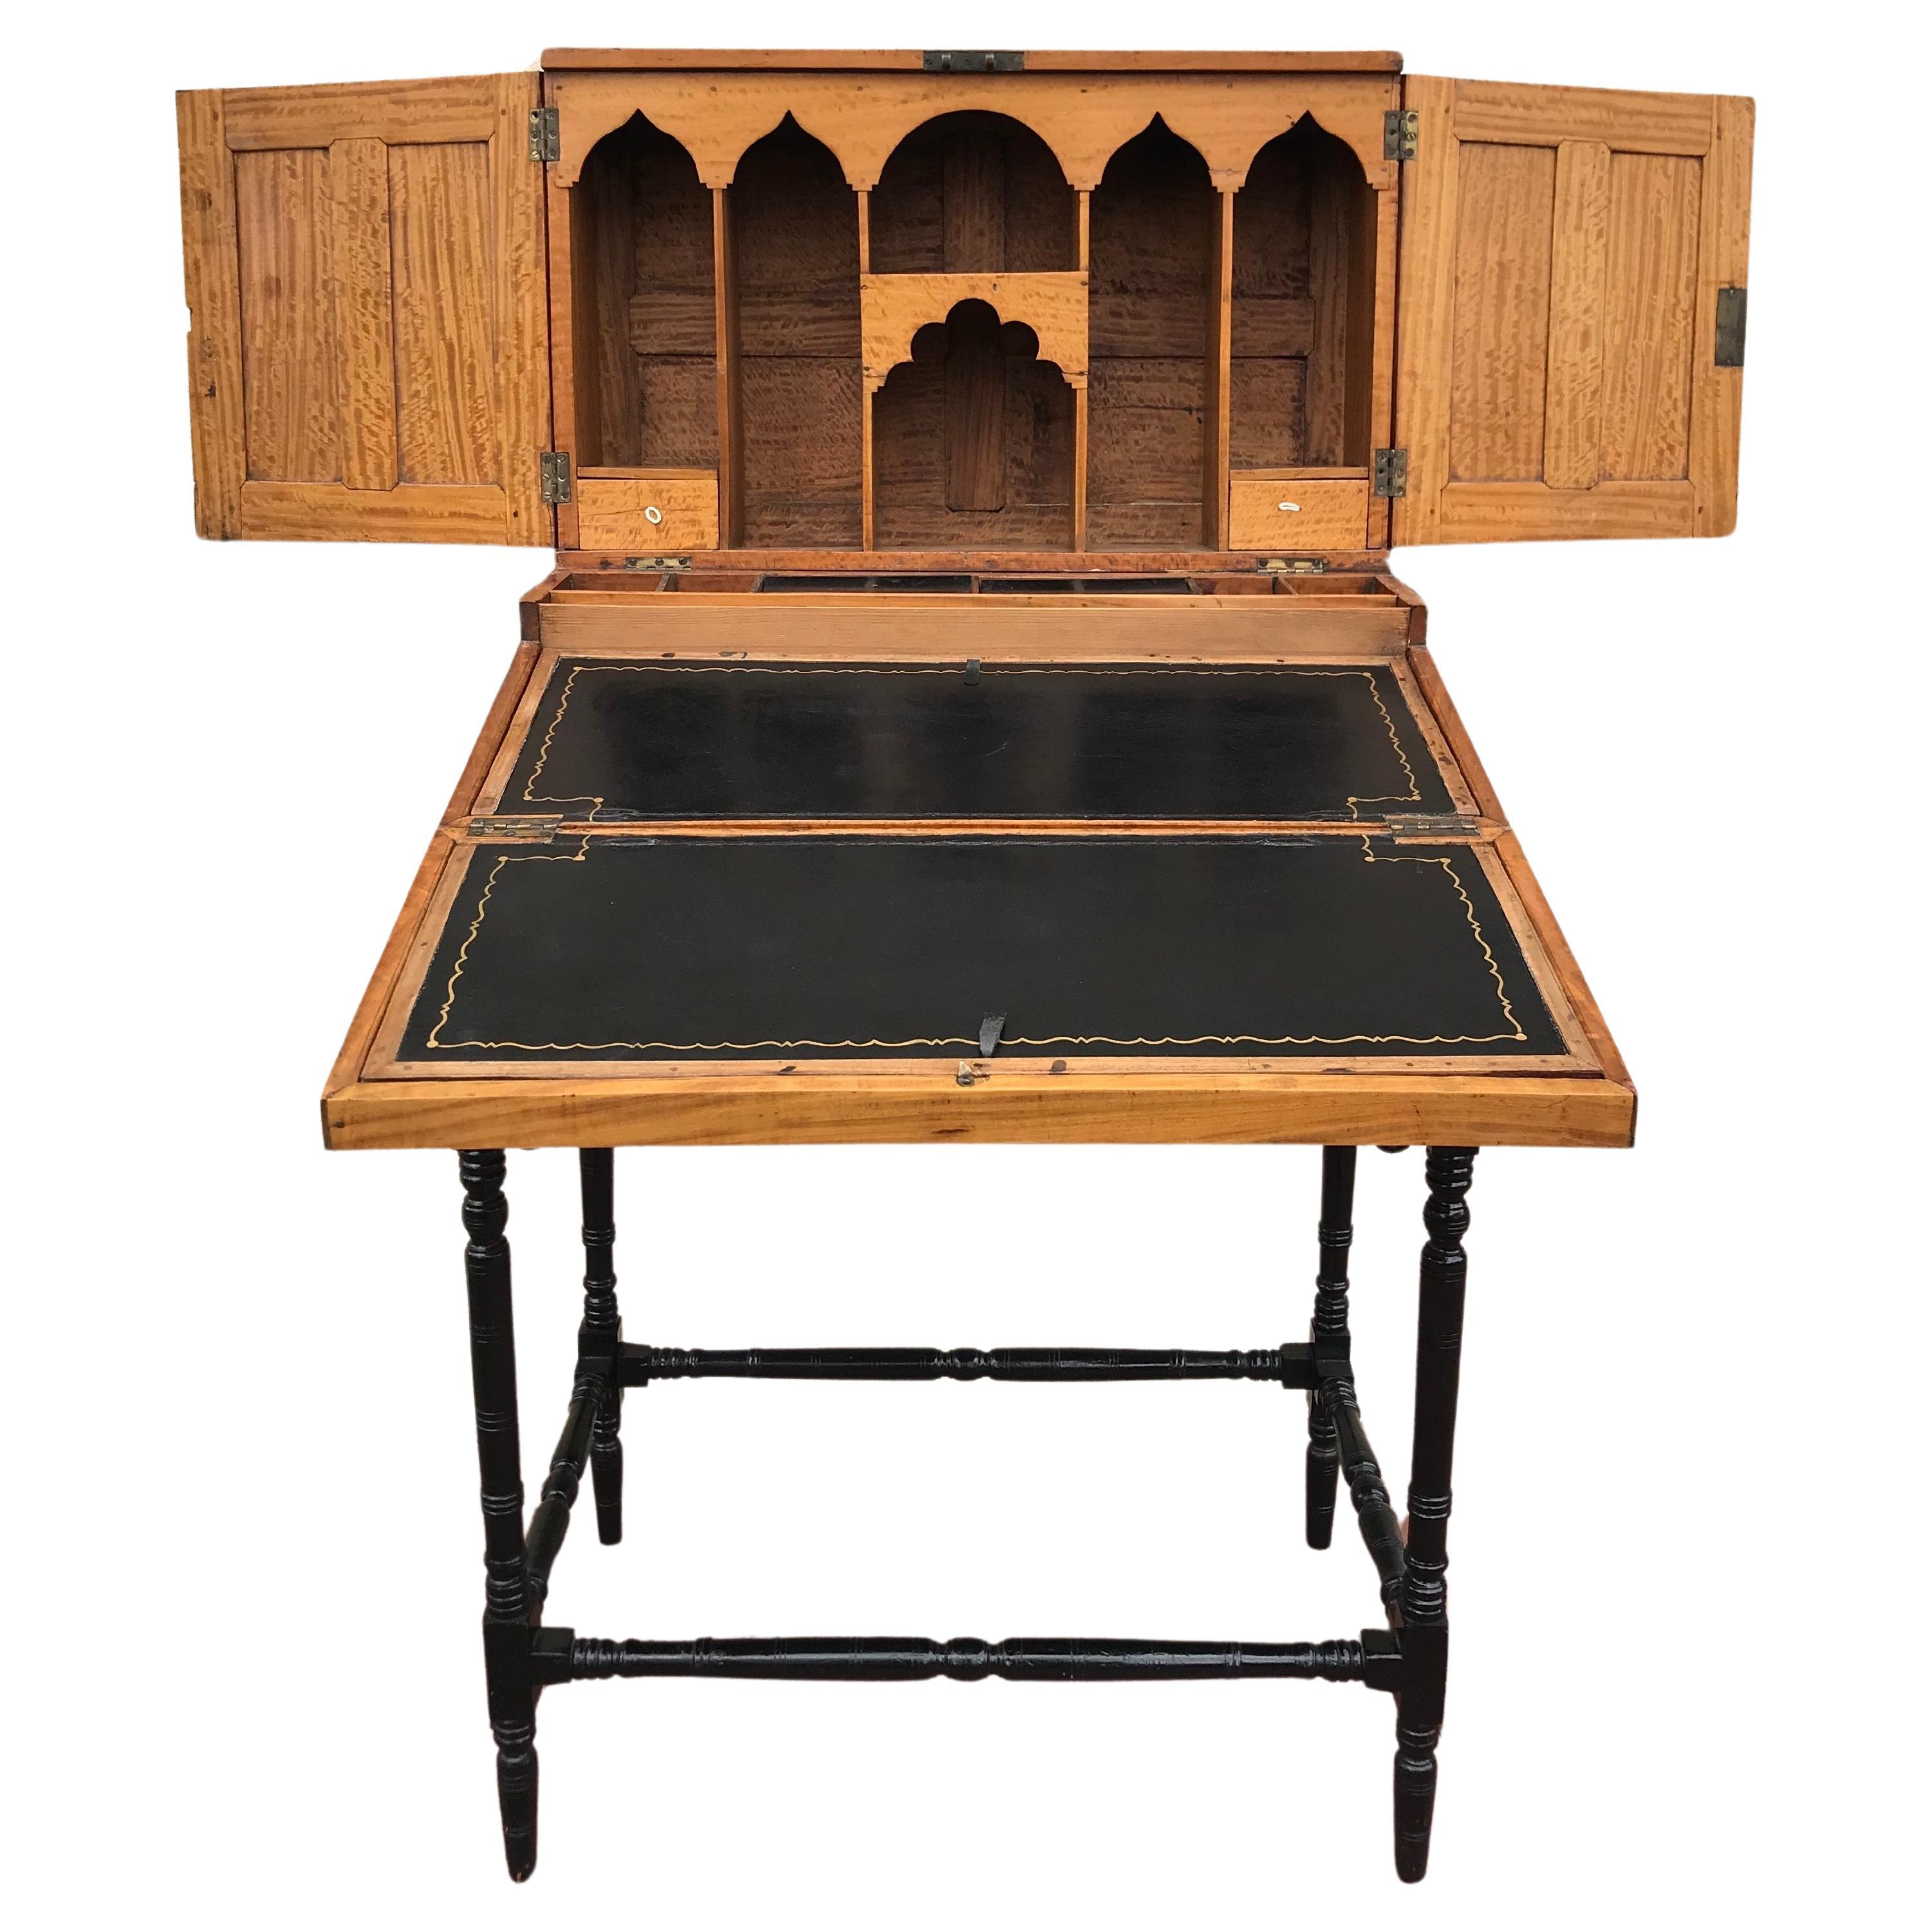 Anglo-indischer Schreibtisch des späten 19. Jahrhunderts auf Stand